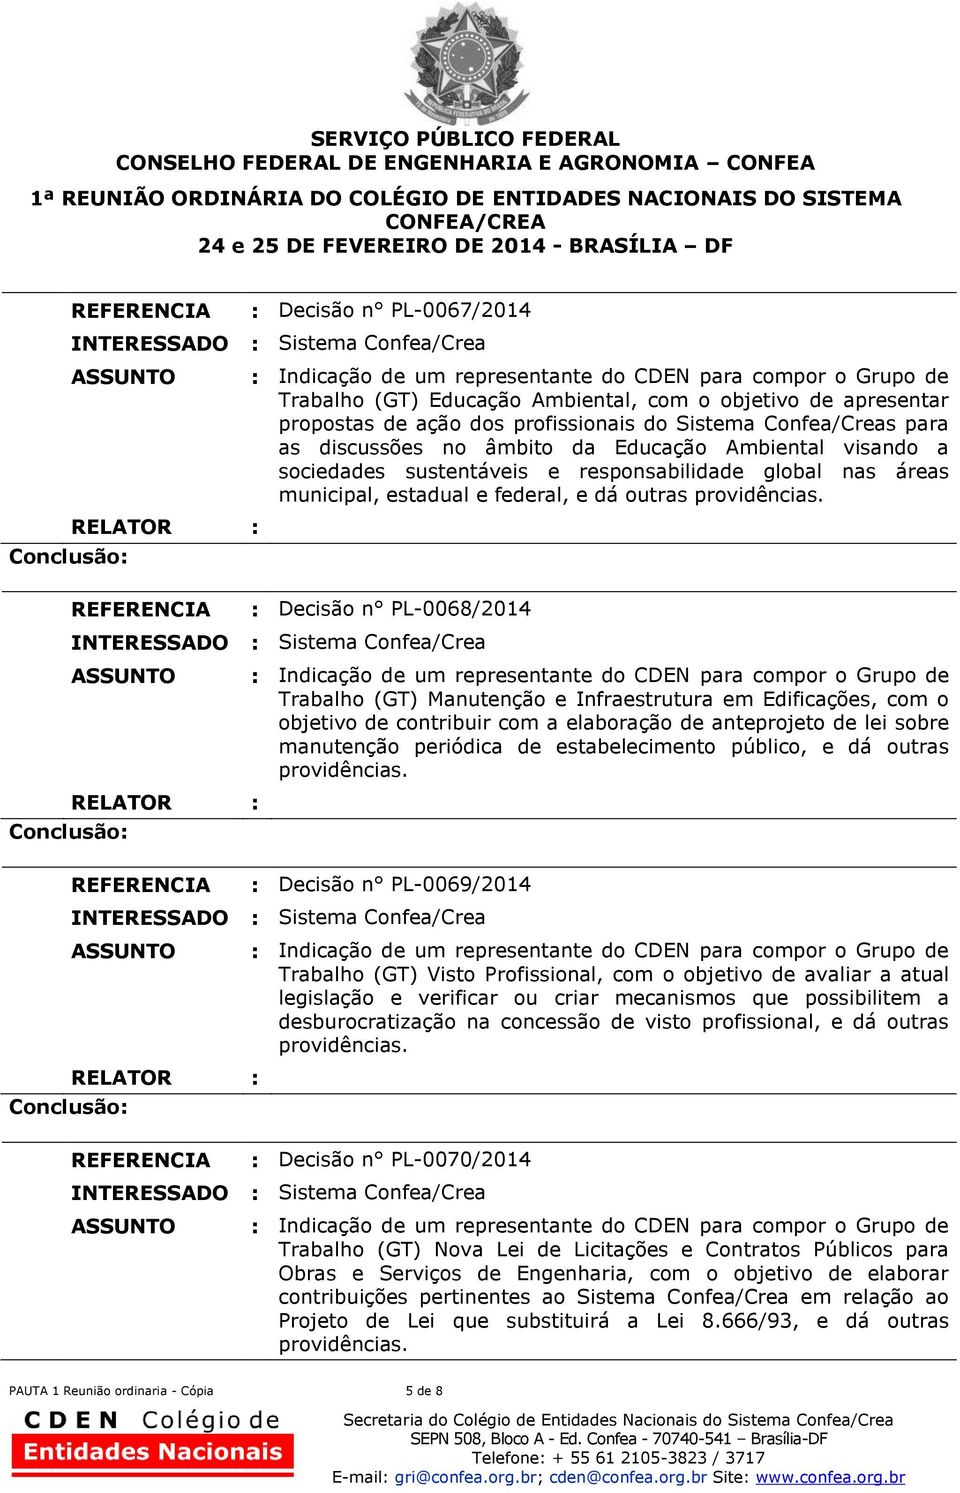 : Decisão n PL-0068/2014 Trabalho (GT) Manutenção e Infraestrutura em Edificações, com o objetivo de contribuir com a elaboração de anteprojeto de lei sobre manutenção periódica de estabelecimento